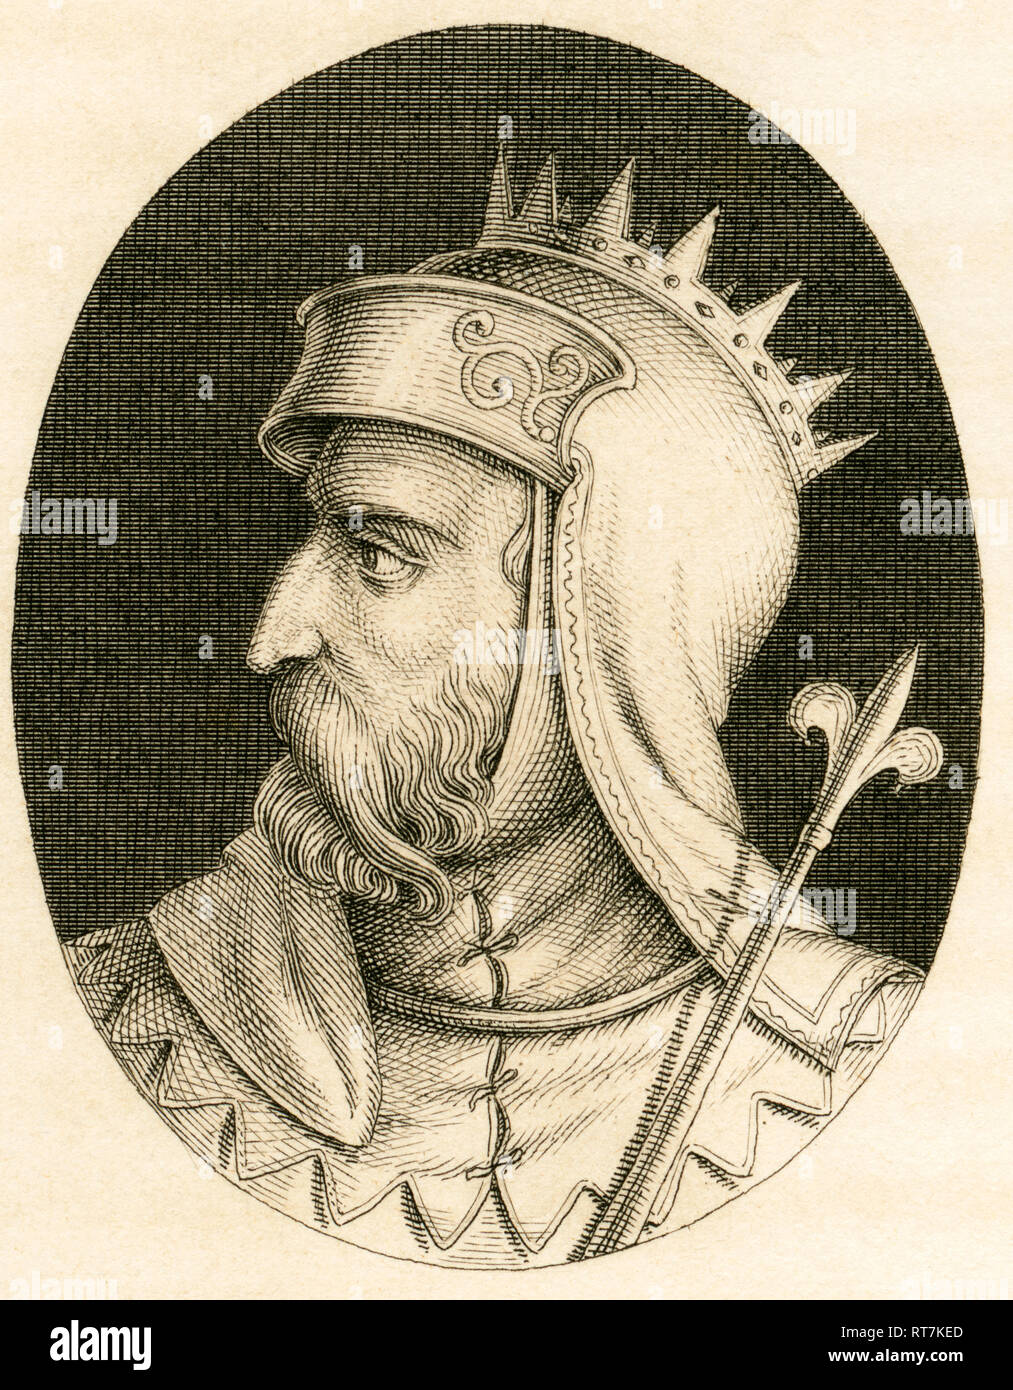 Pepin, la dinastía carolingia, grabado de Stahlheim copperplate, aproximadamente 1840ª., Copyright del artista no ha de ser borrado Foto de stock